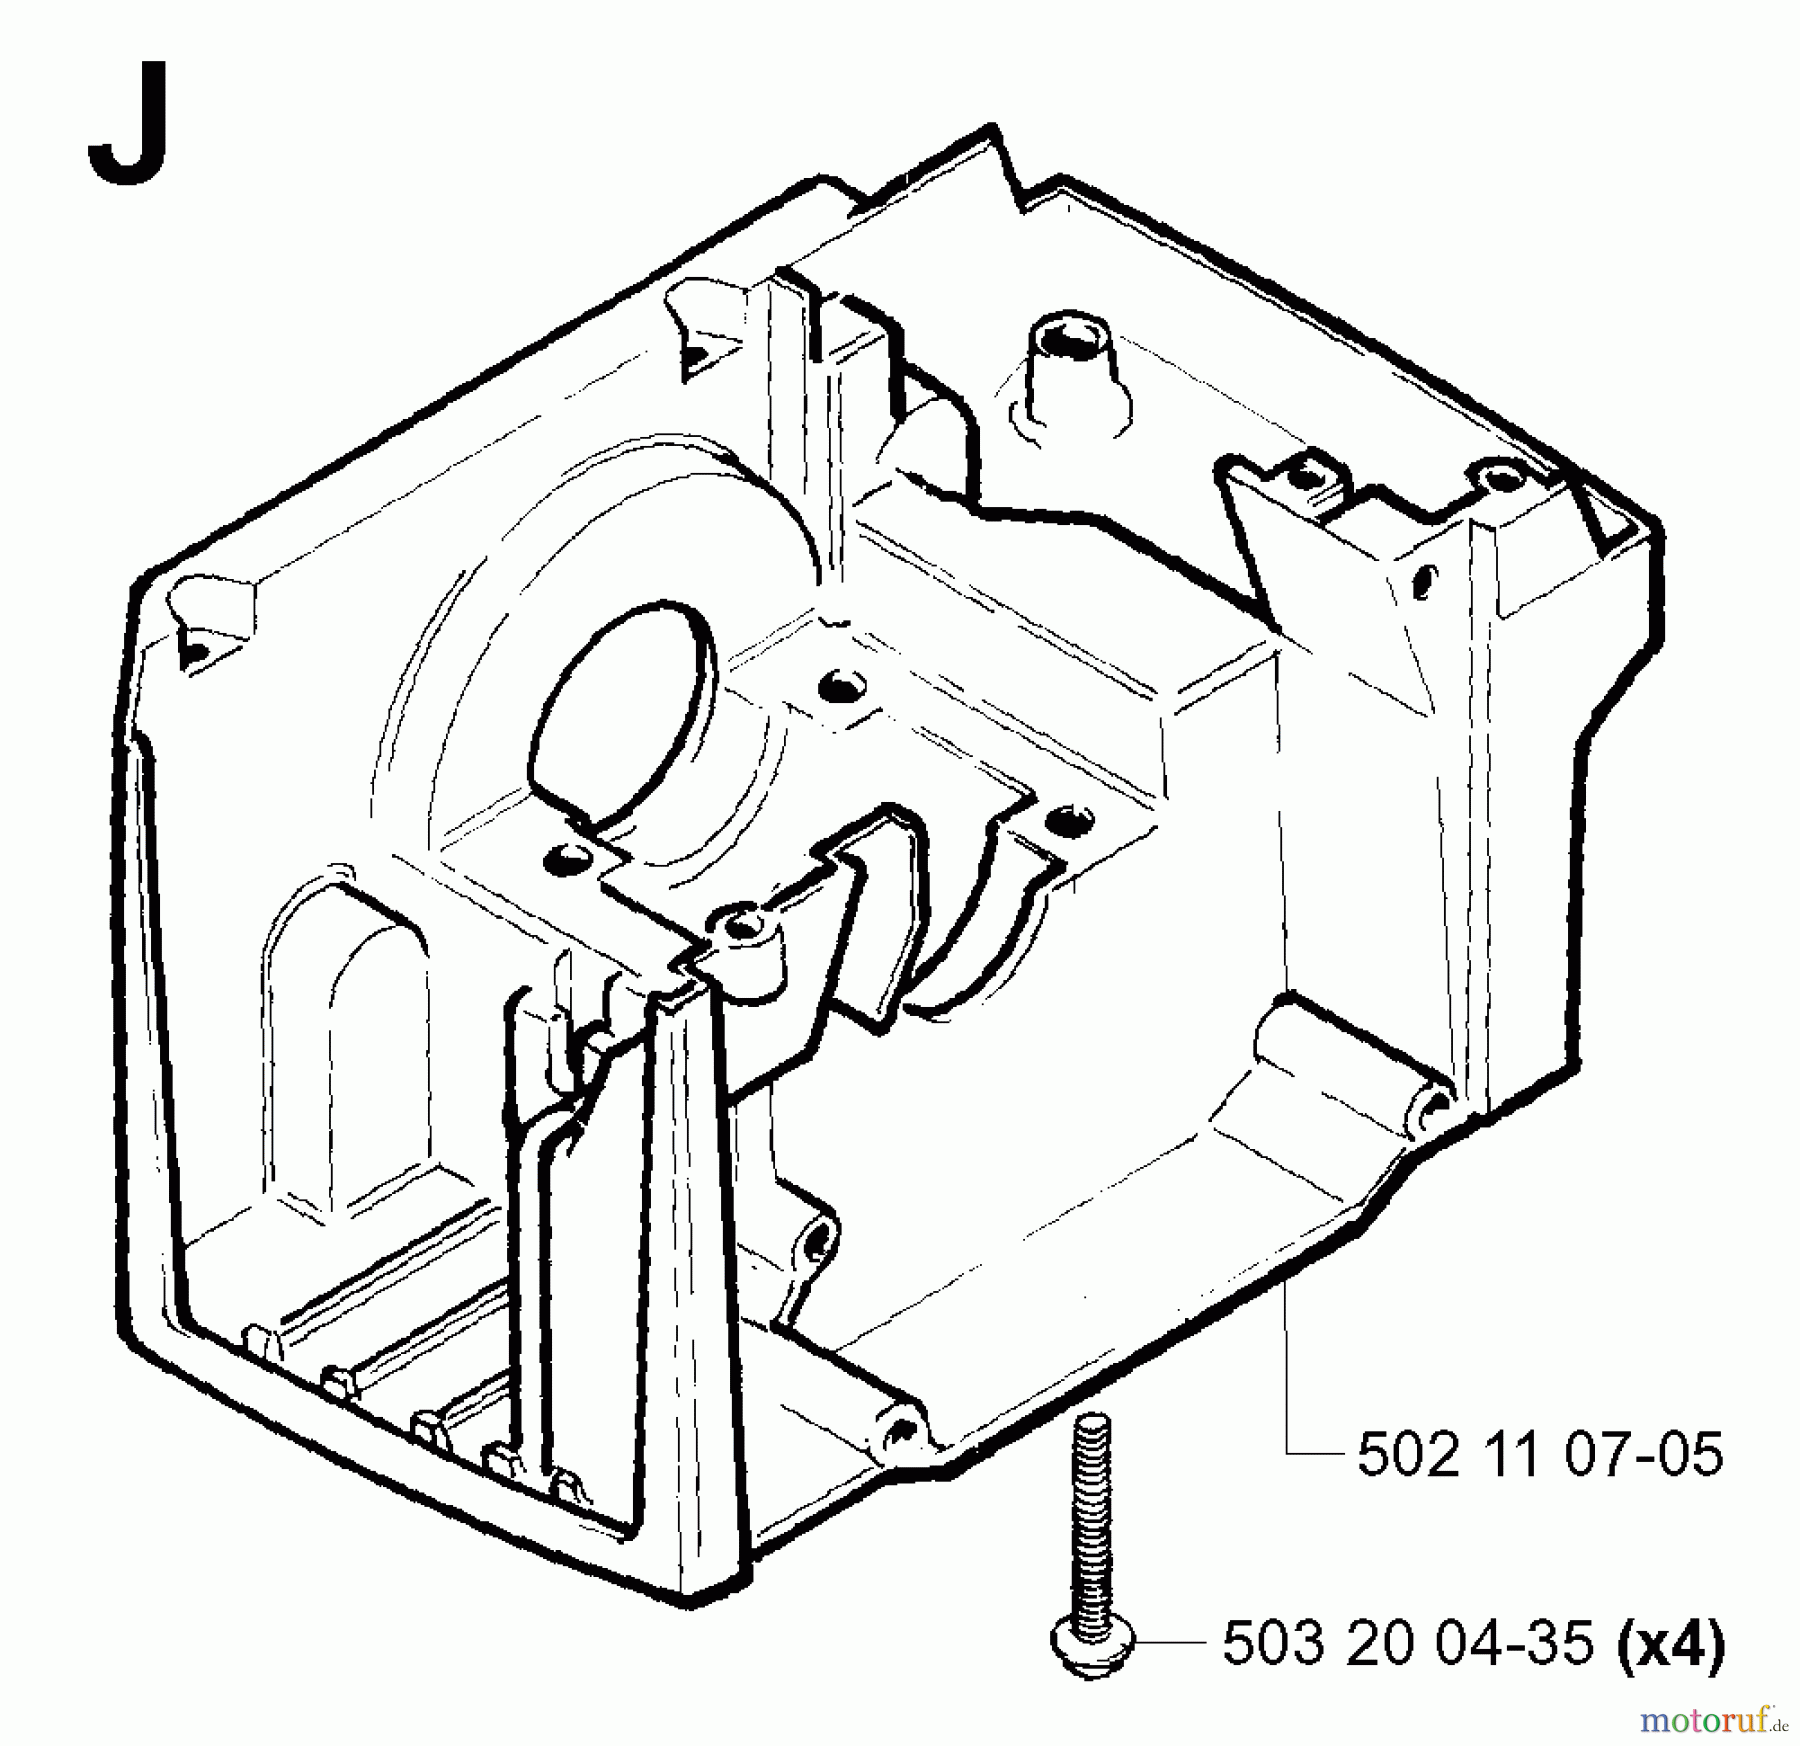  Jonsered Motorsensen, Trimmer GR41 - Jonsered String/Brush Trimmer (2001-03) CRANKCASE